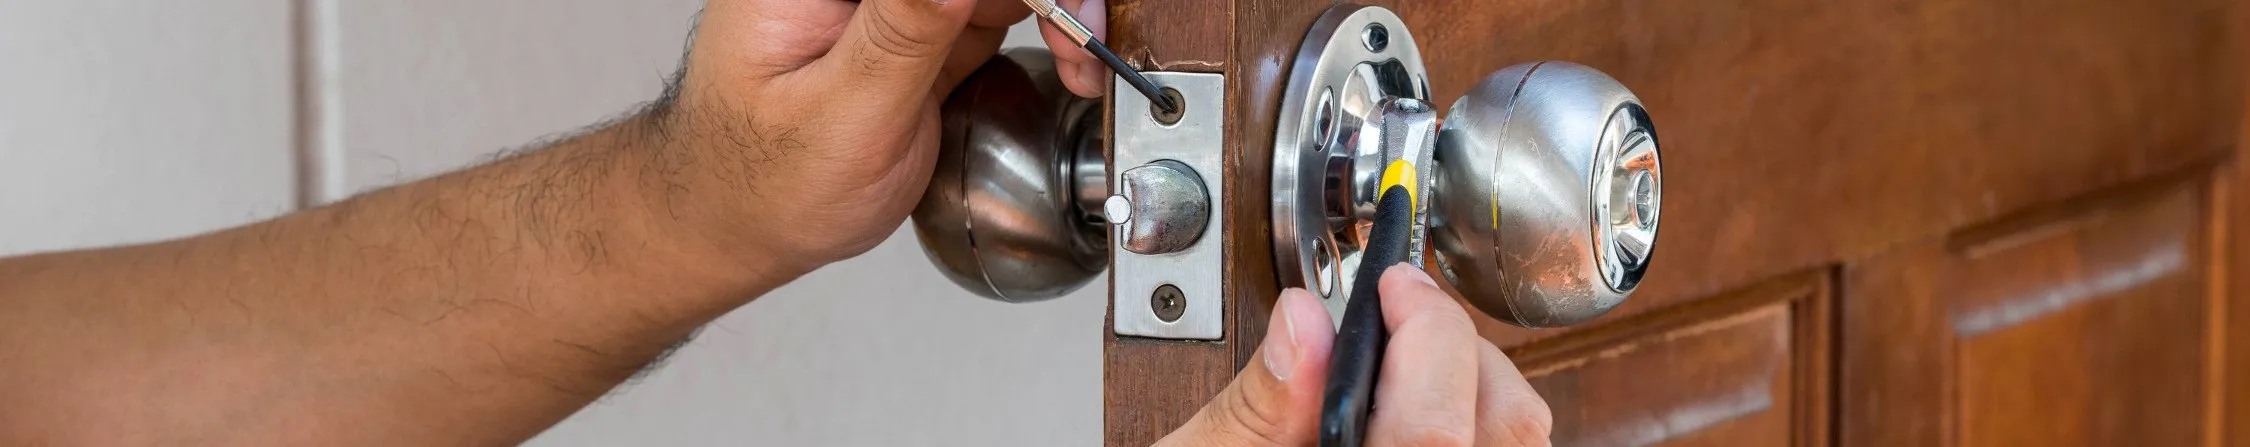 cerrajero puerta hori - Cambiar Cerradura Picanya – Instalación, Reparación y Abrir